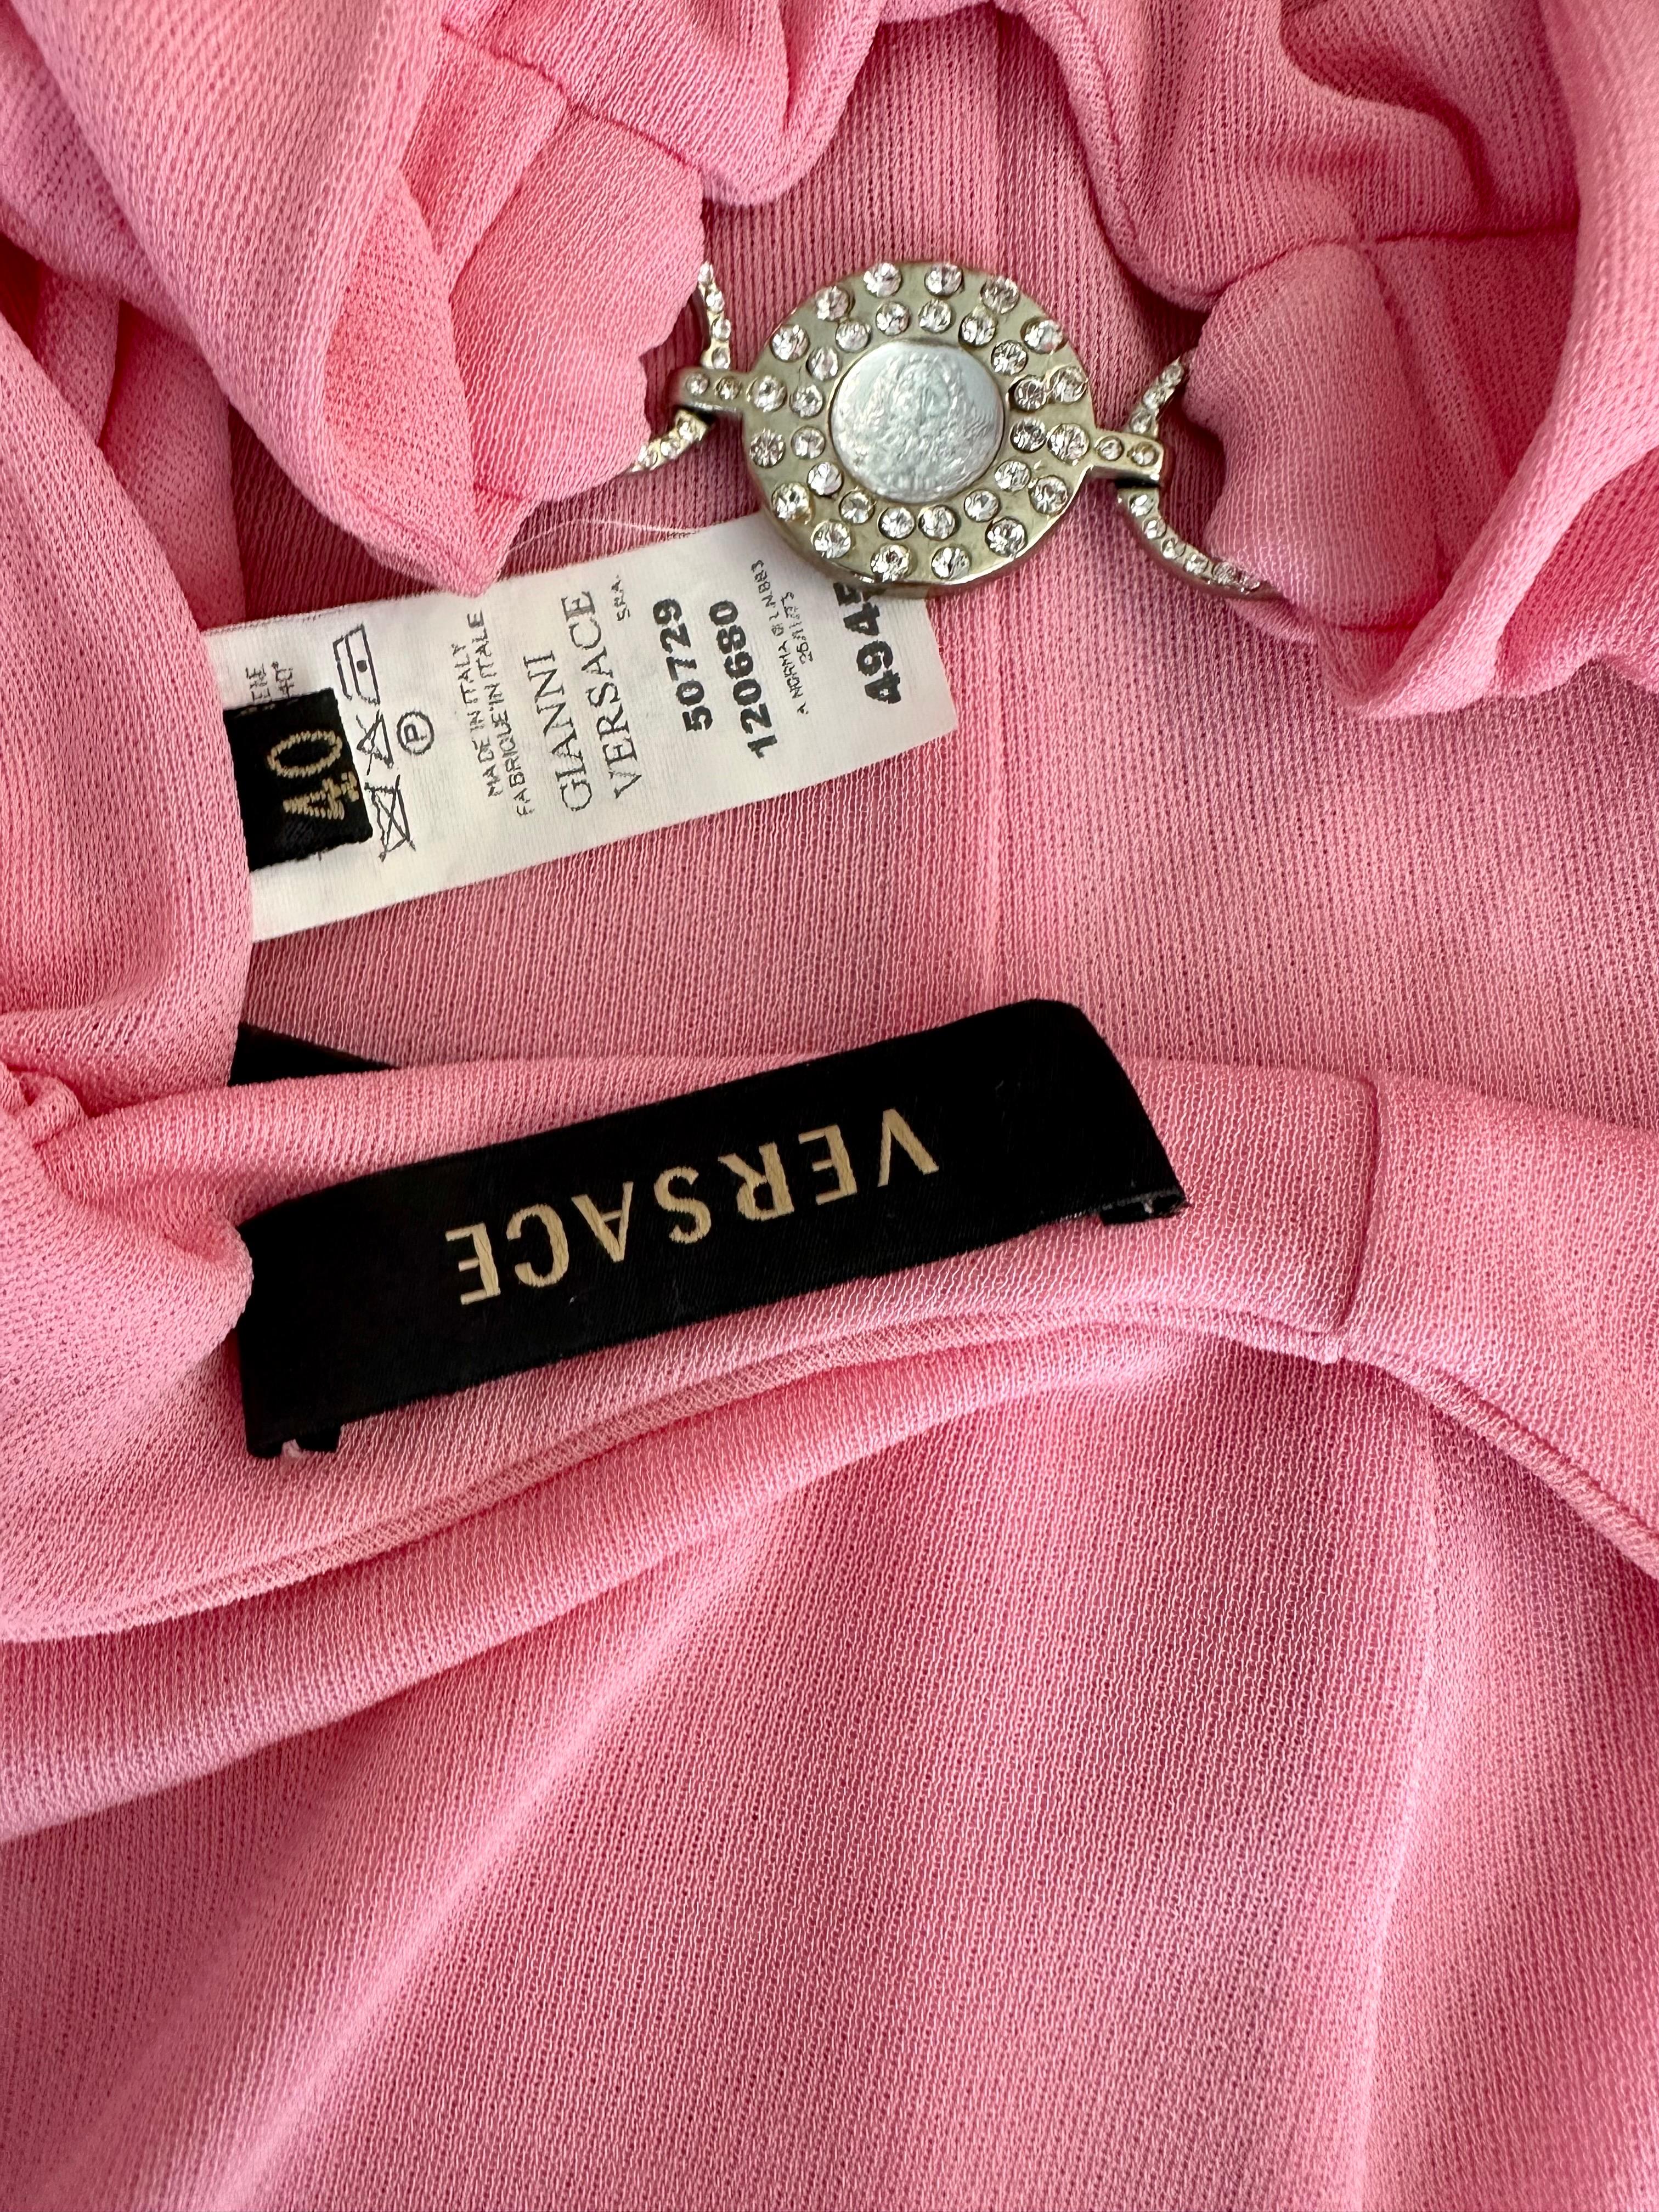 Versace S/S 2007 Crystal Logo Plunging Neckline Backless Halter Pink Dress 5